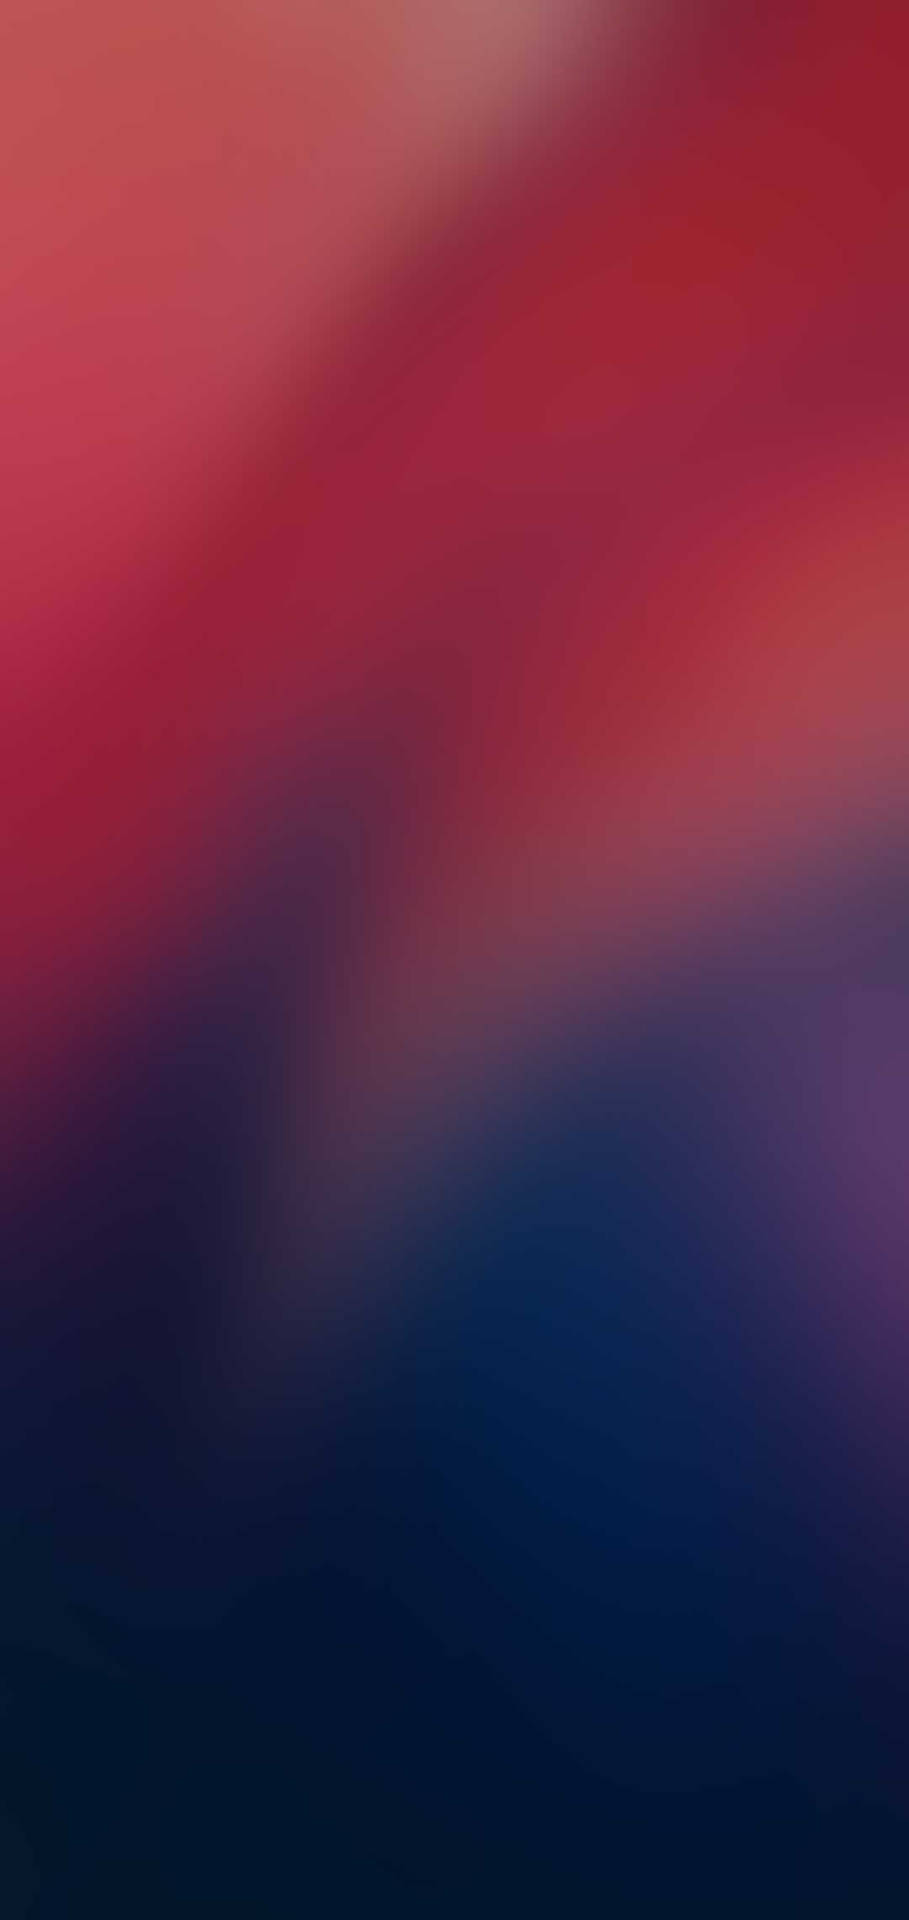 Sleek Redmi 9 With Red Blue Gradient Blur Wallpaper